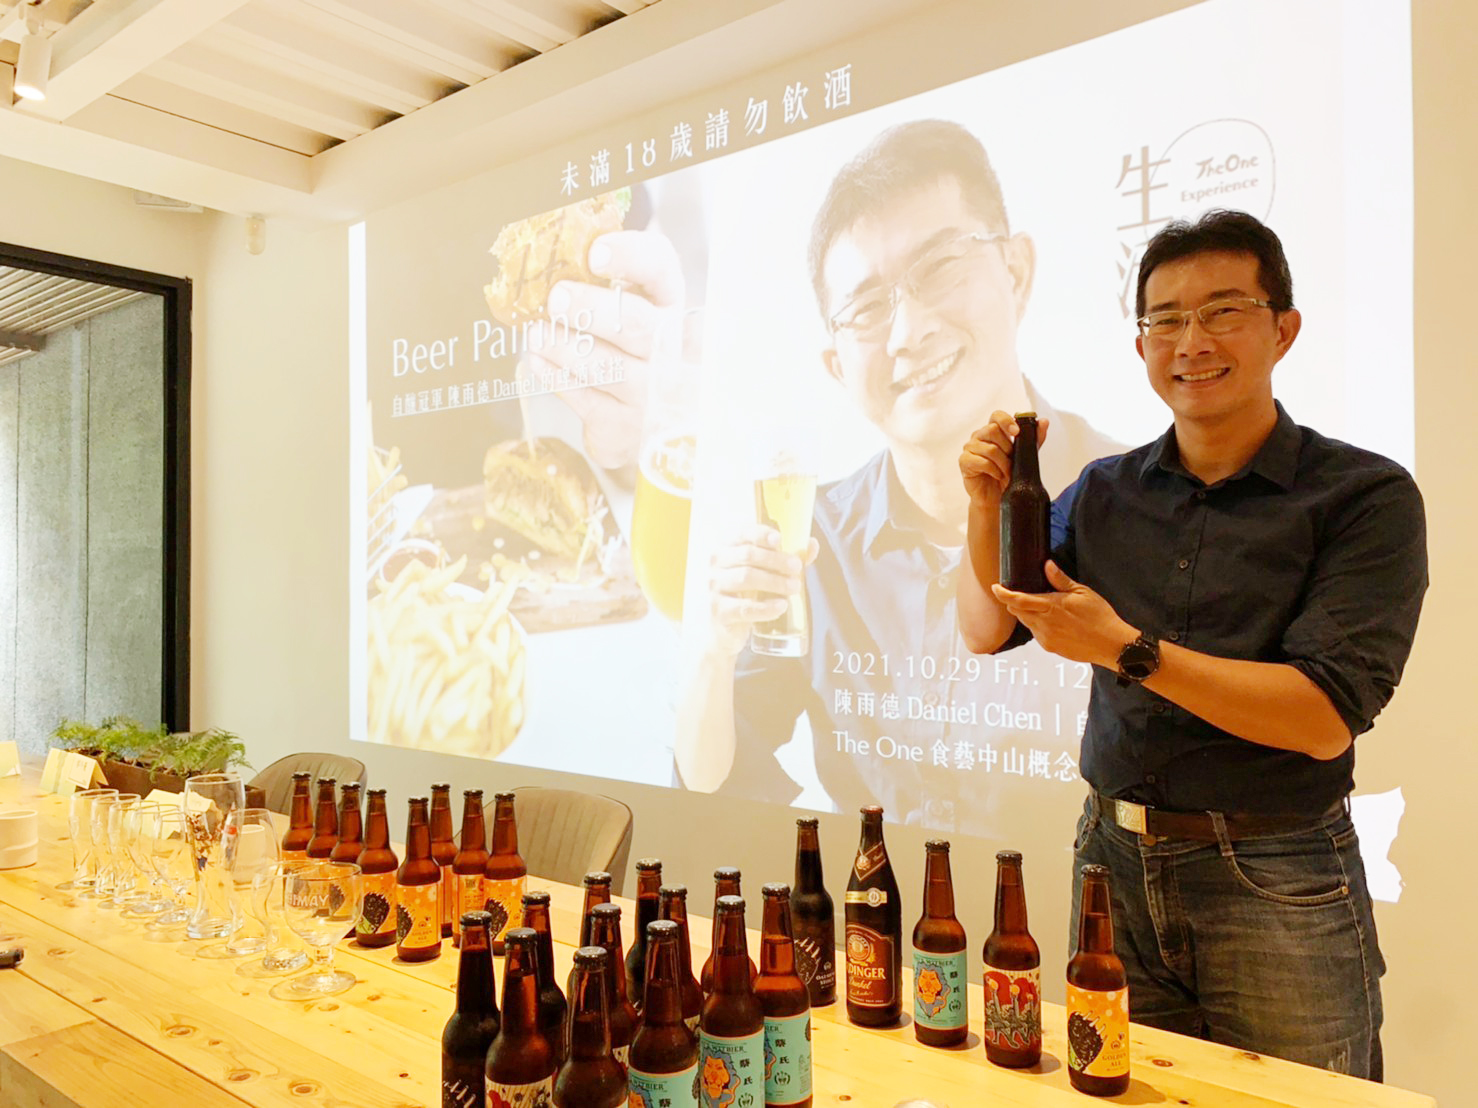 陳 雨 德 鑽 研 自 釀 啤 酒 有 成 ， 獲 得 國 際 大 獎 肯 定 。 